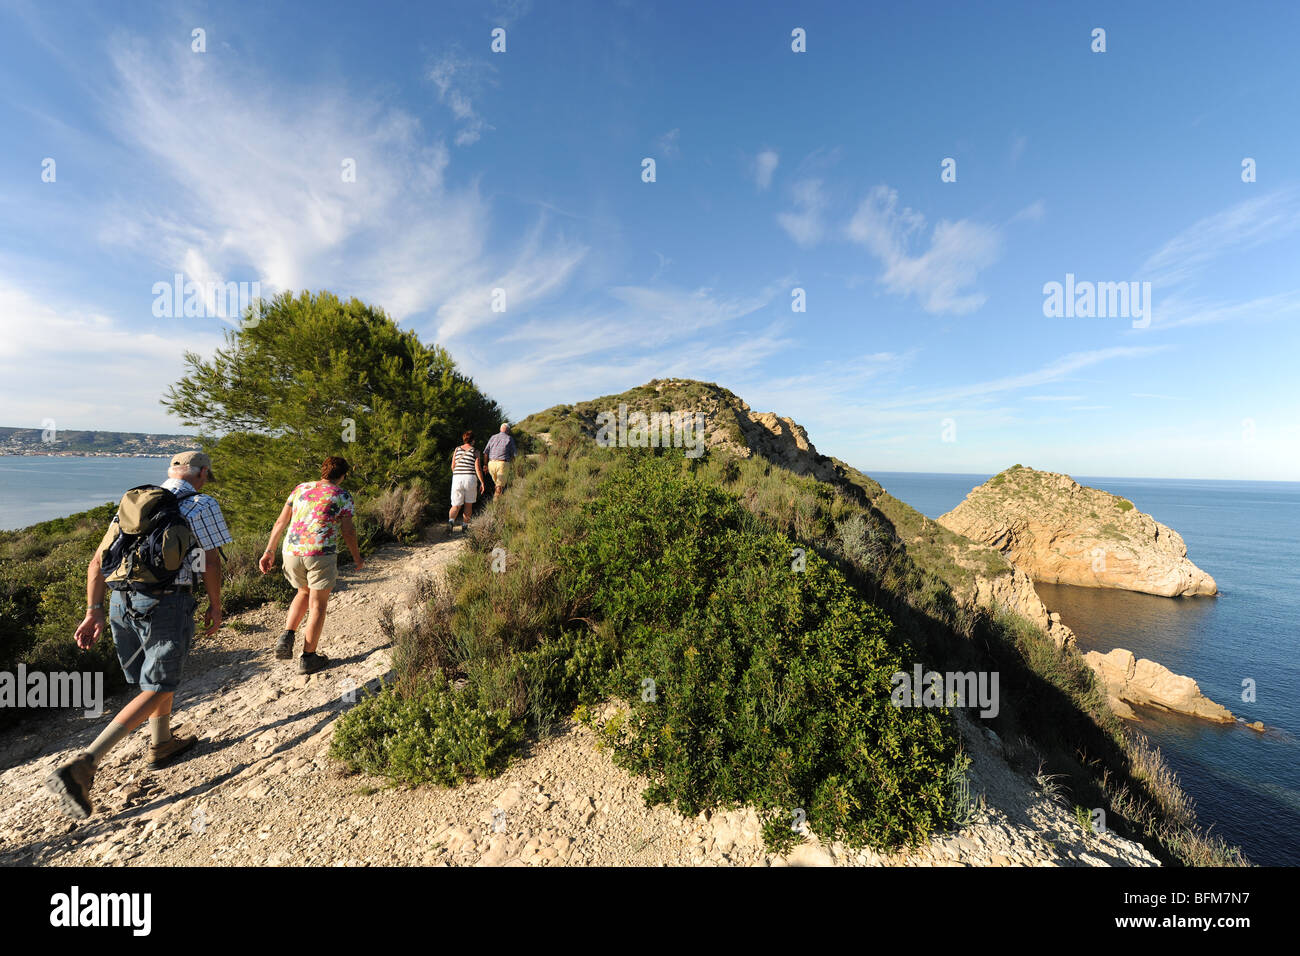 walkers on Cap Prim headland, Javea / Xabia, Alicante Province, Comunidad Valenciana, Spain Stock Photo